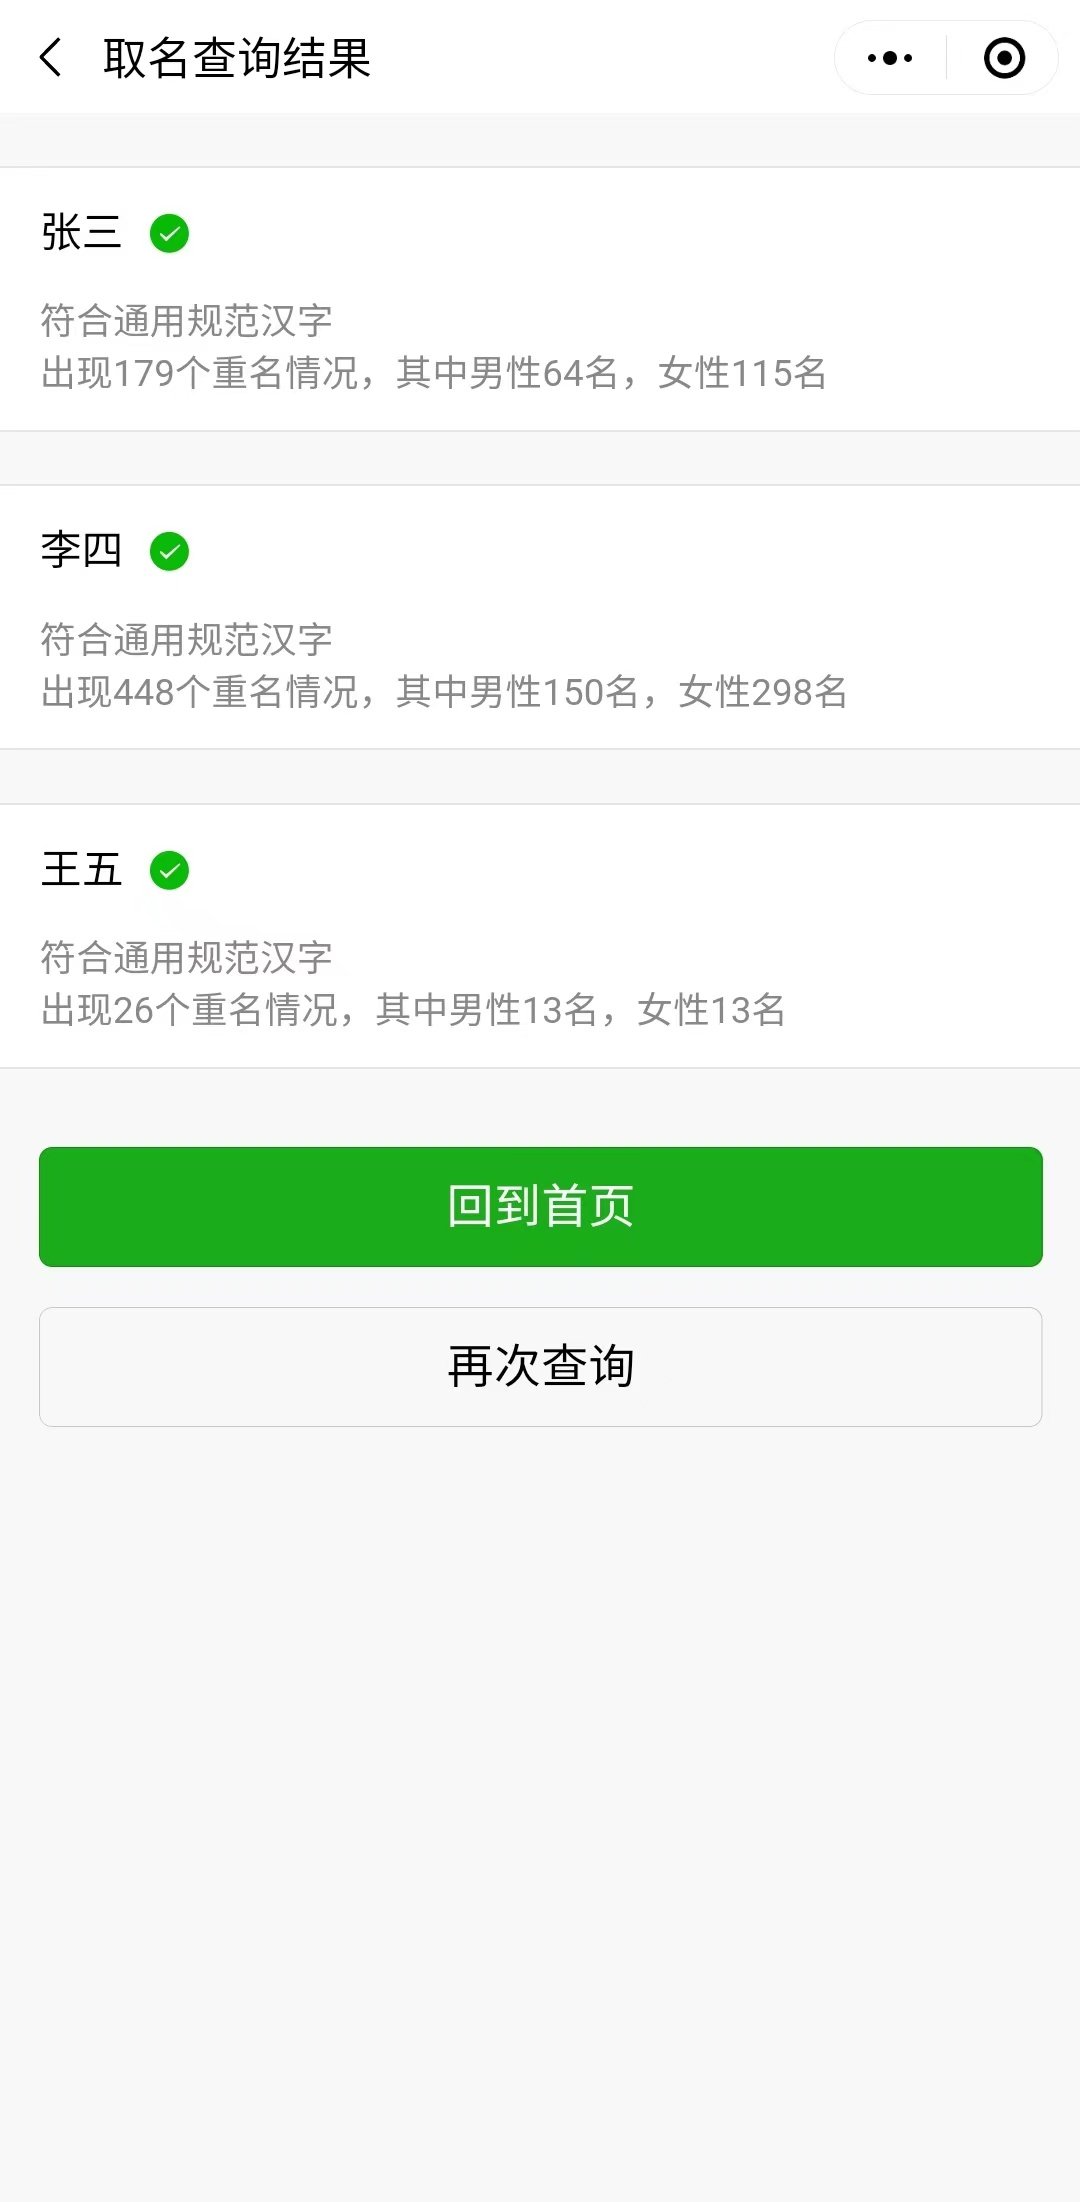 广东重名查询免费入口 广东重名查询系统全国官网